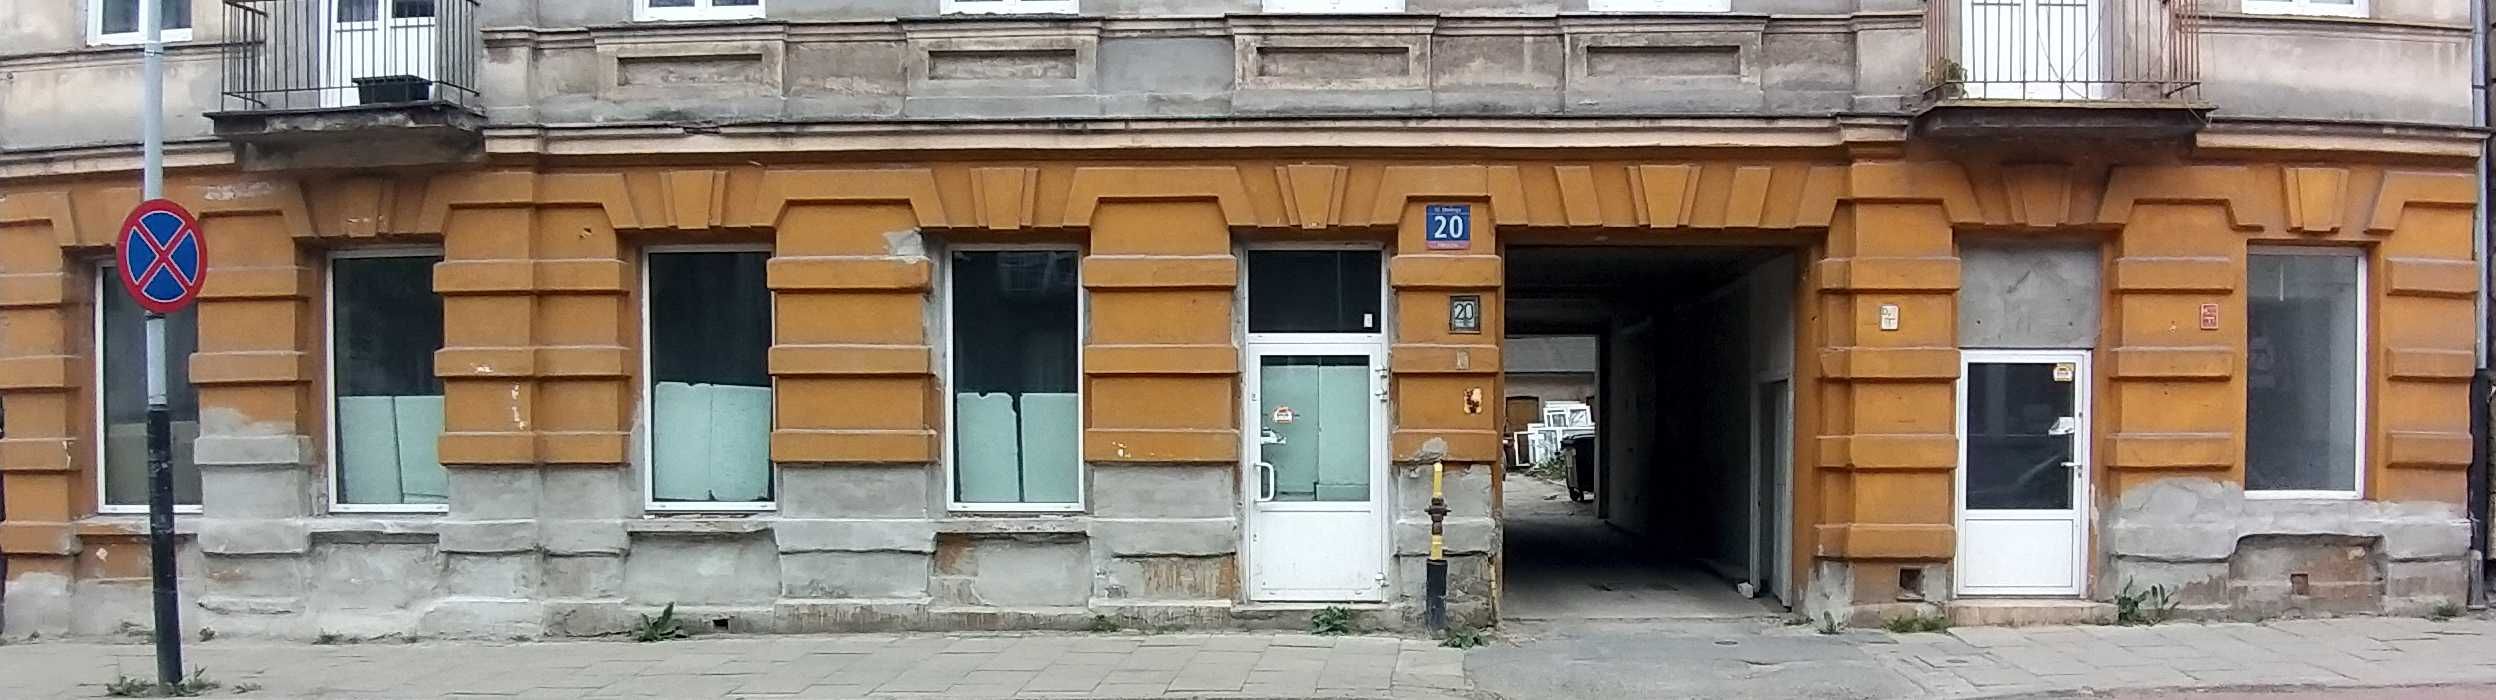 Lokal handlowo-usługowy, do wynajęcia, sklep w centrum Łódź, KLIMA